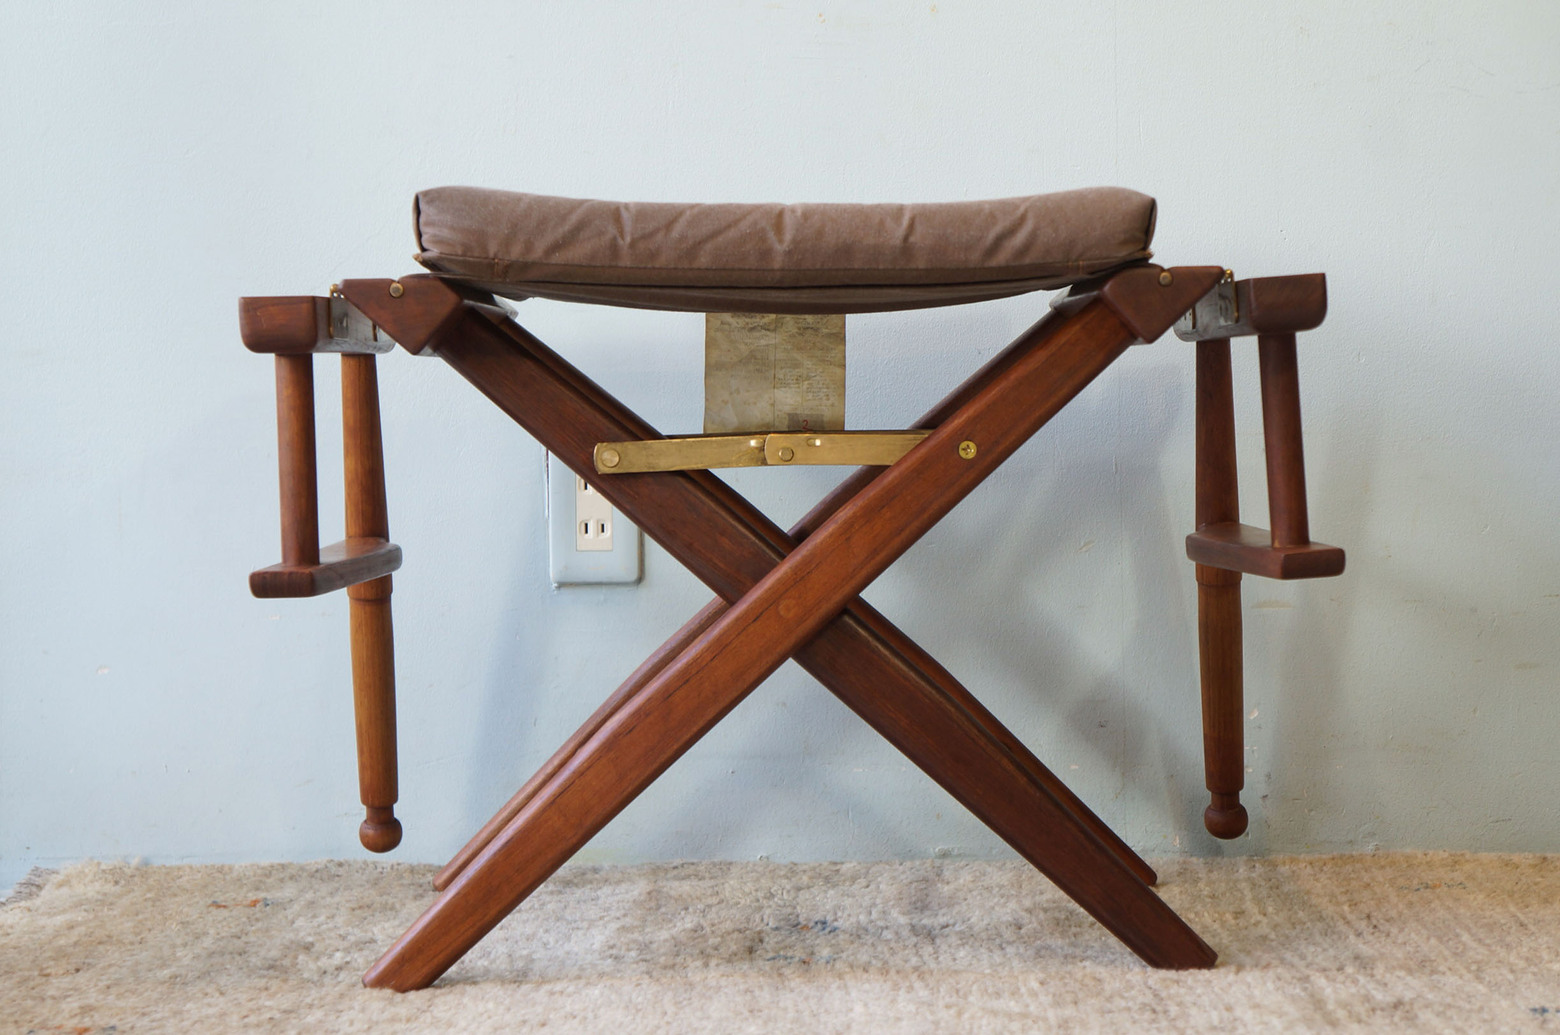 Wooden Director’s Chair/ディレクターズチェア 折りたたみ 椅子 USモダン アウトドア 1